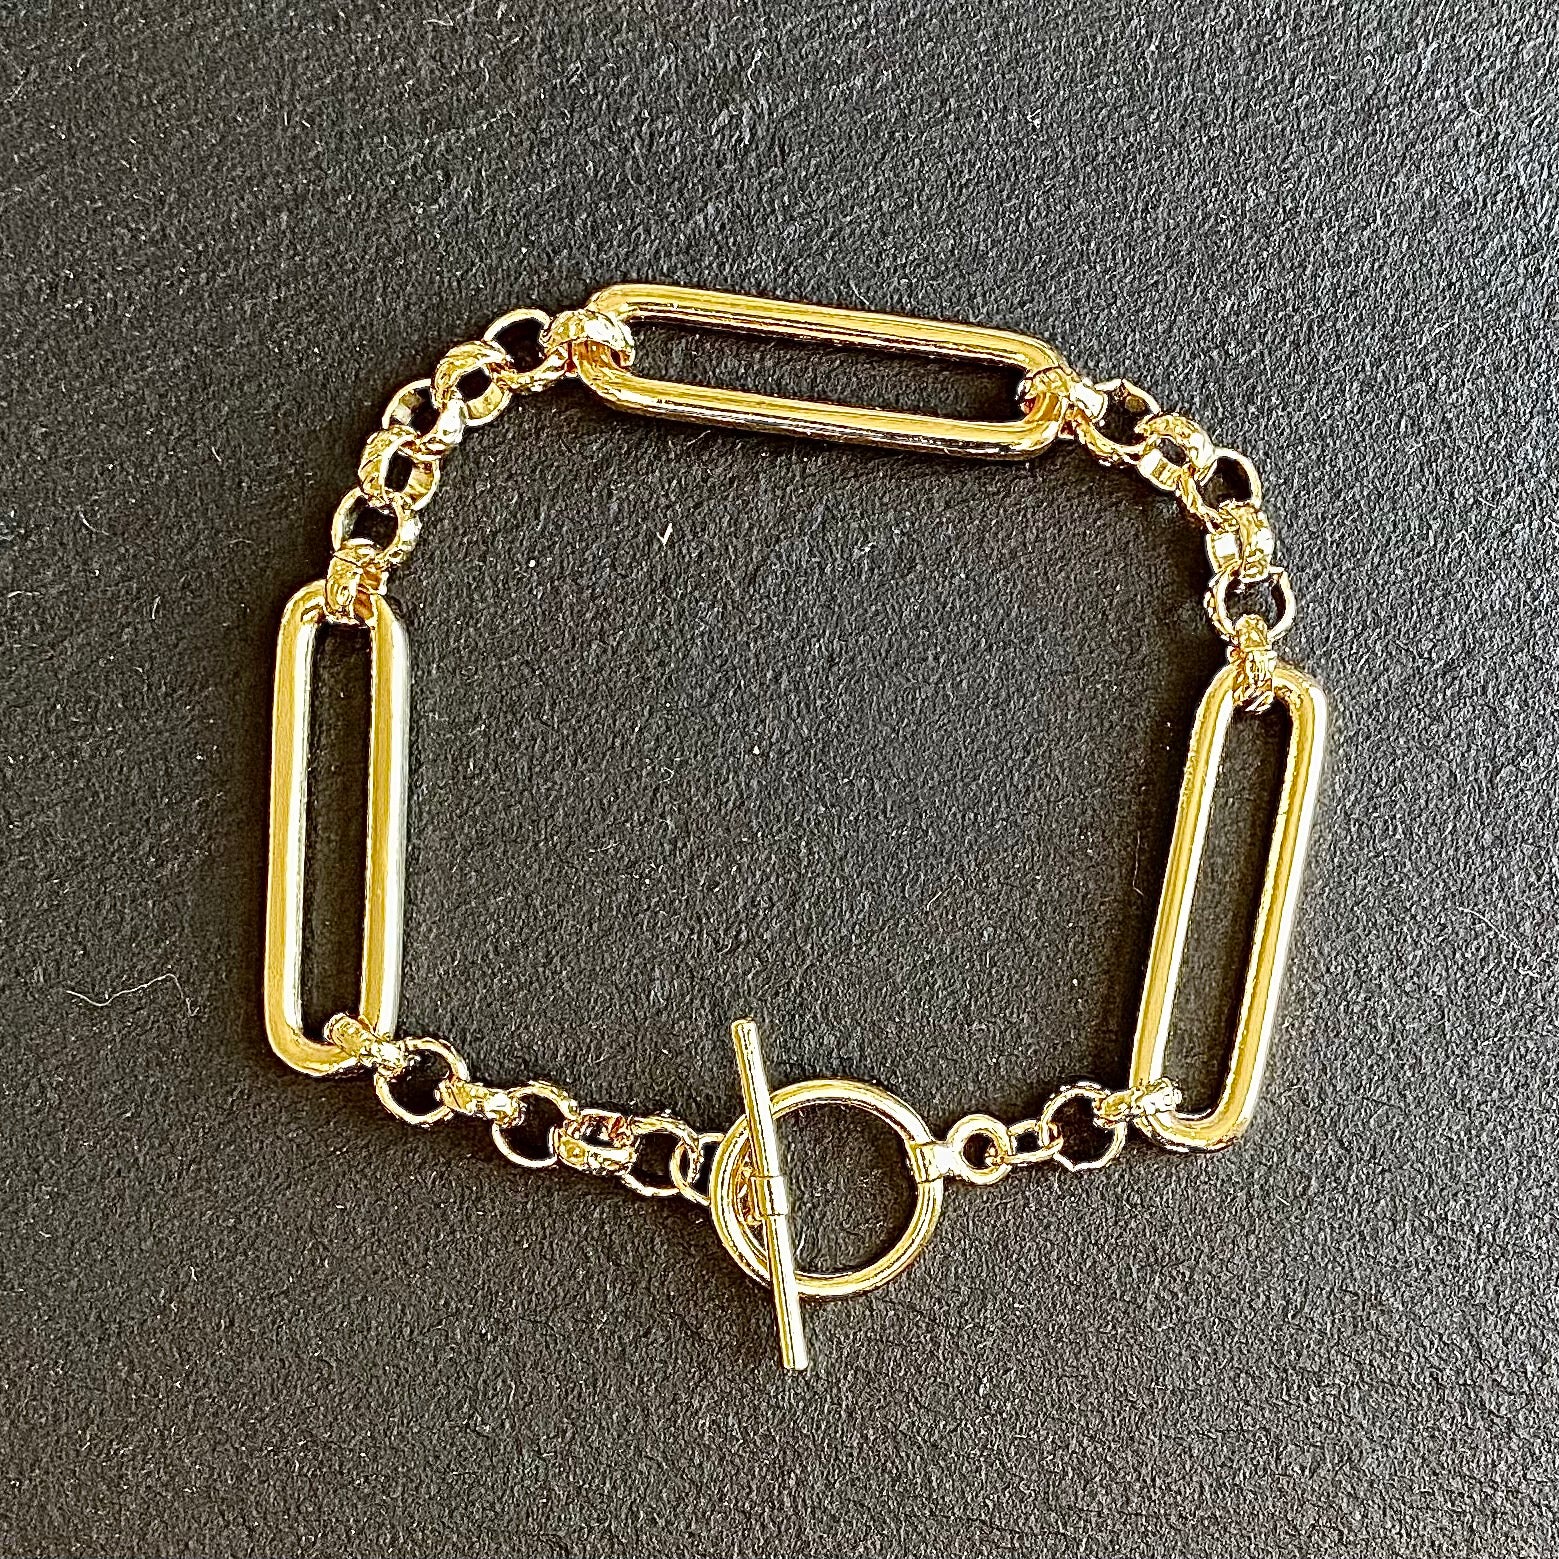 Gold Bracelet for Women, Link Bracelet, Gold Bridal Bracelet, Chunky Silver  Bracelet, Statement Bracelet, Romantic Jewelry, Big Bracelet - Etsy | Gold  bracelet for women, Romantic jewellery, Bridal bracelet